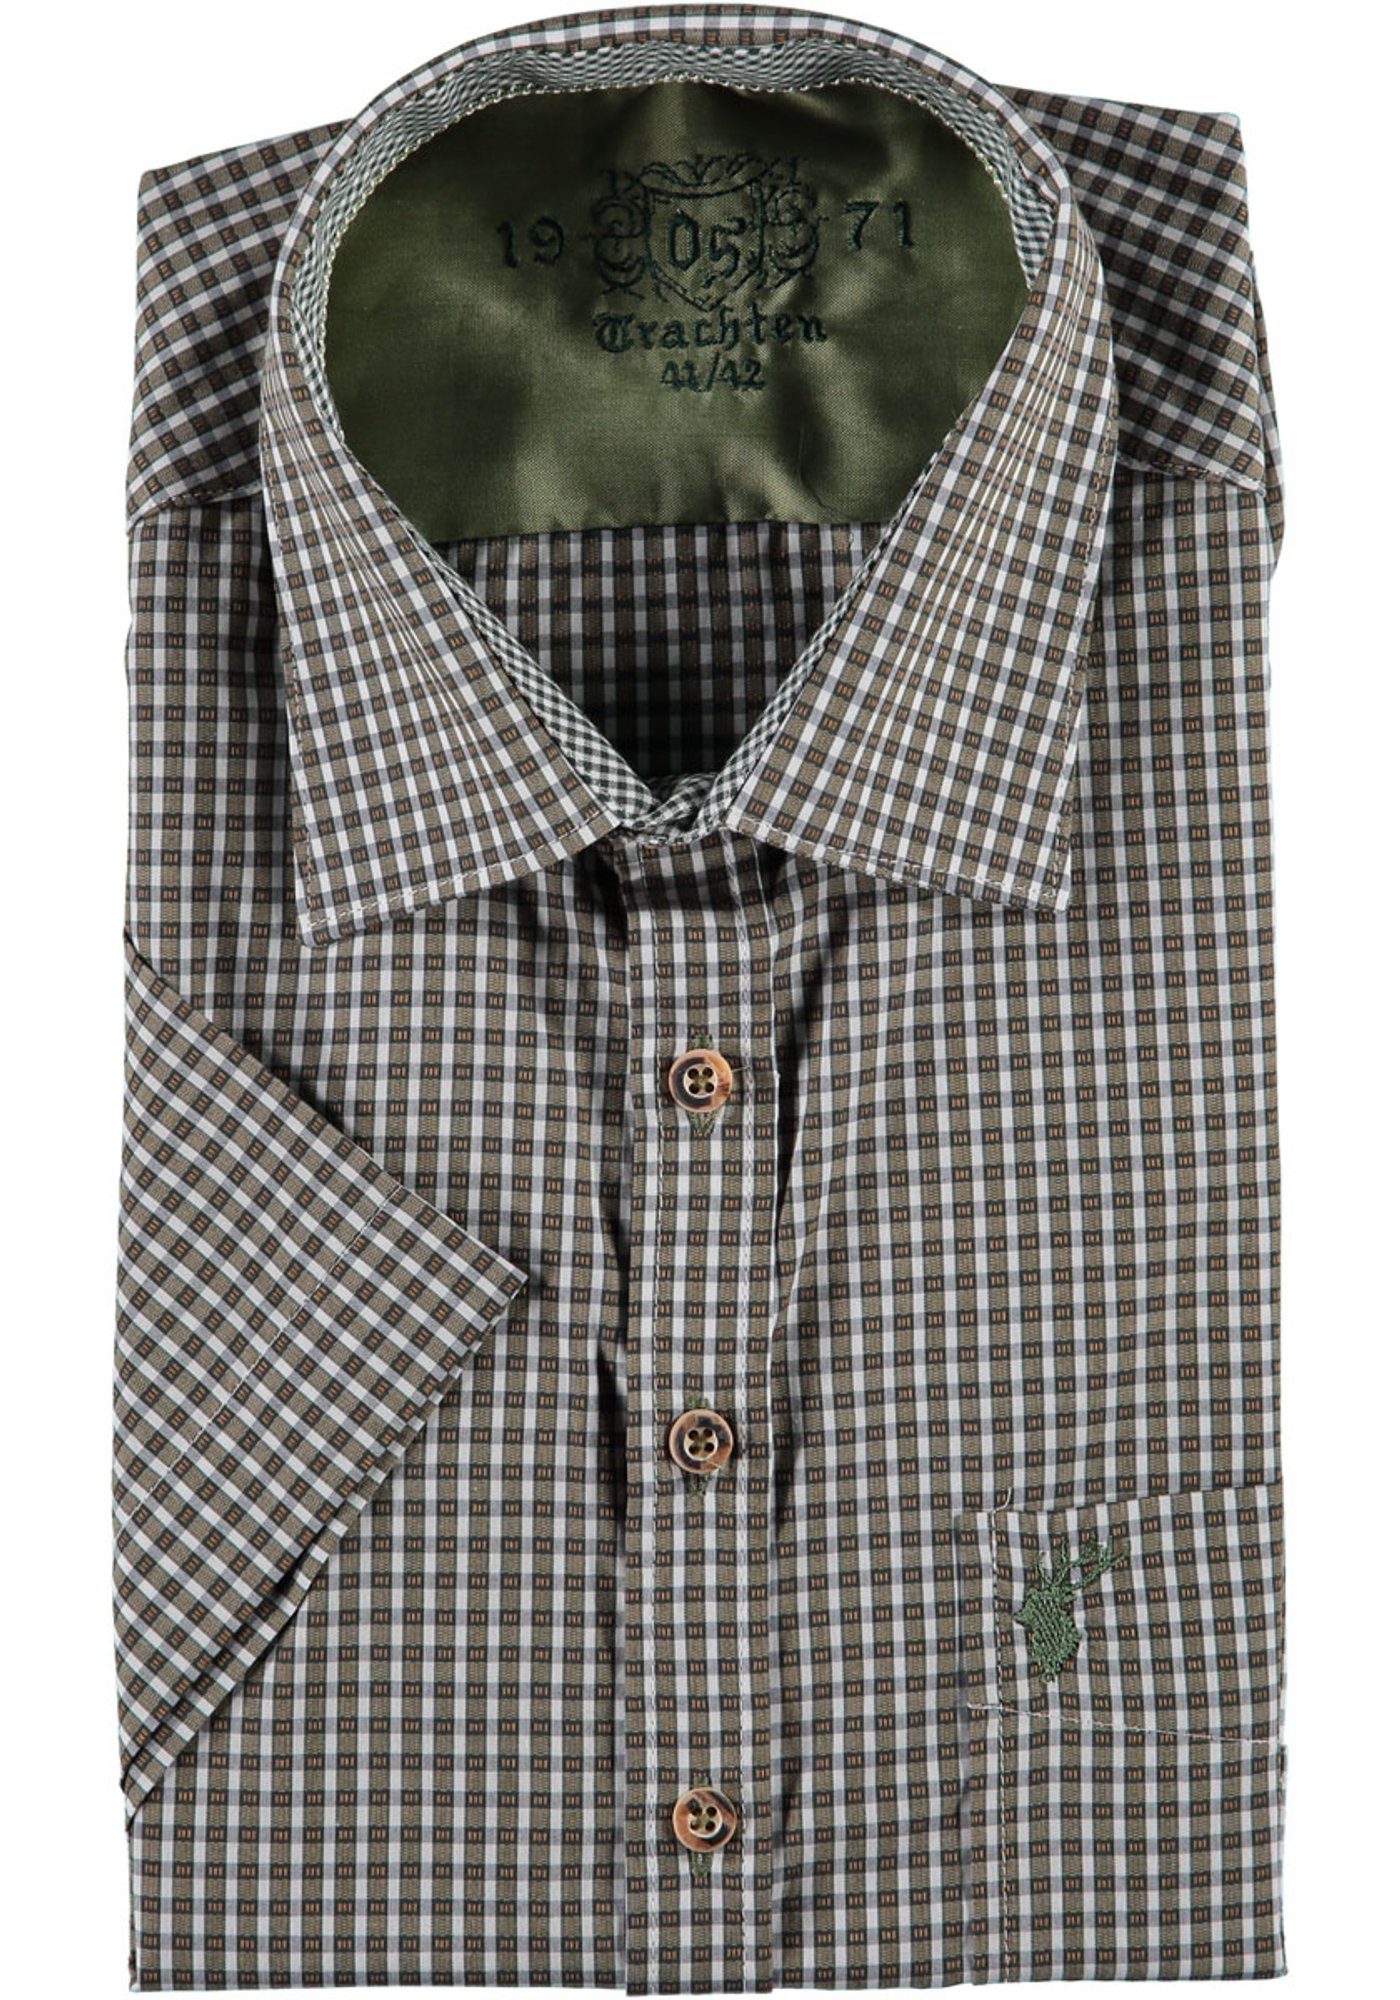 OS-Trachten Trachtenhemd Bruvo Herren Kurzarmhemd mit Hirsch-Stickerei auf der Brusttasche hellbraun